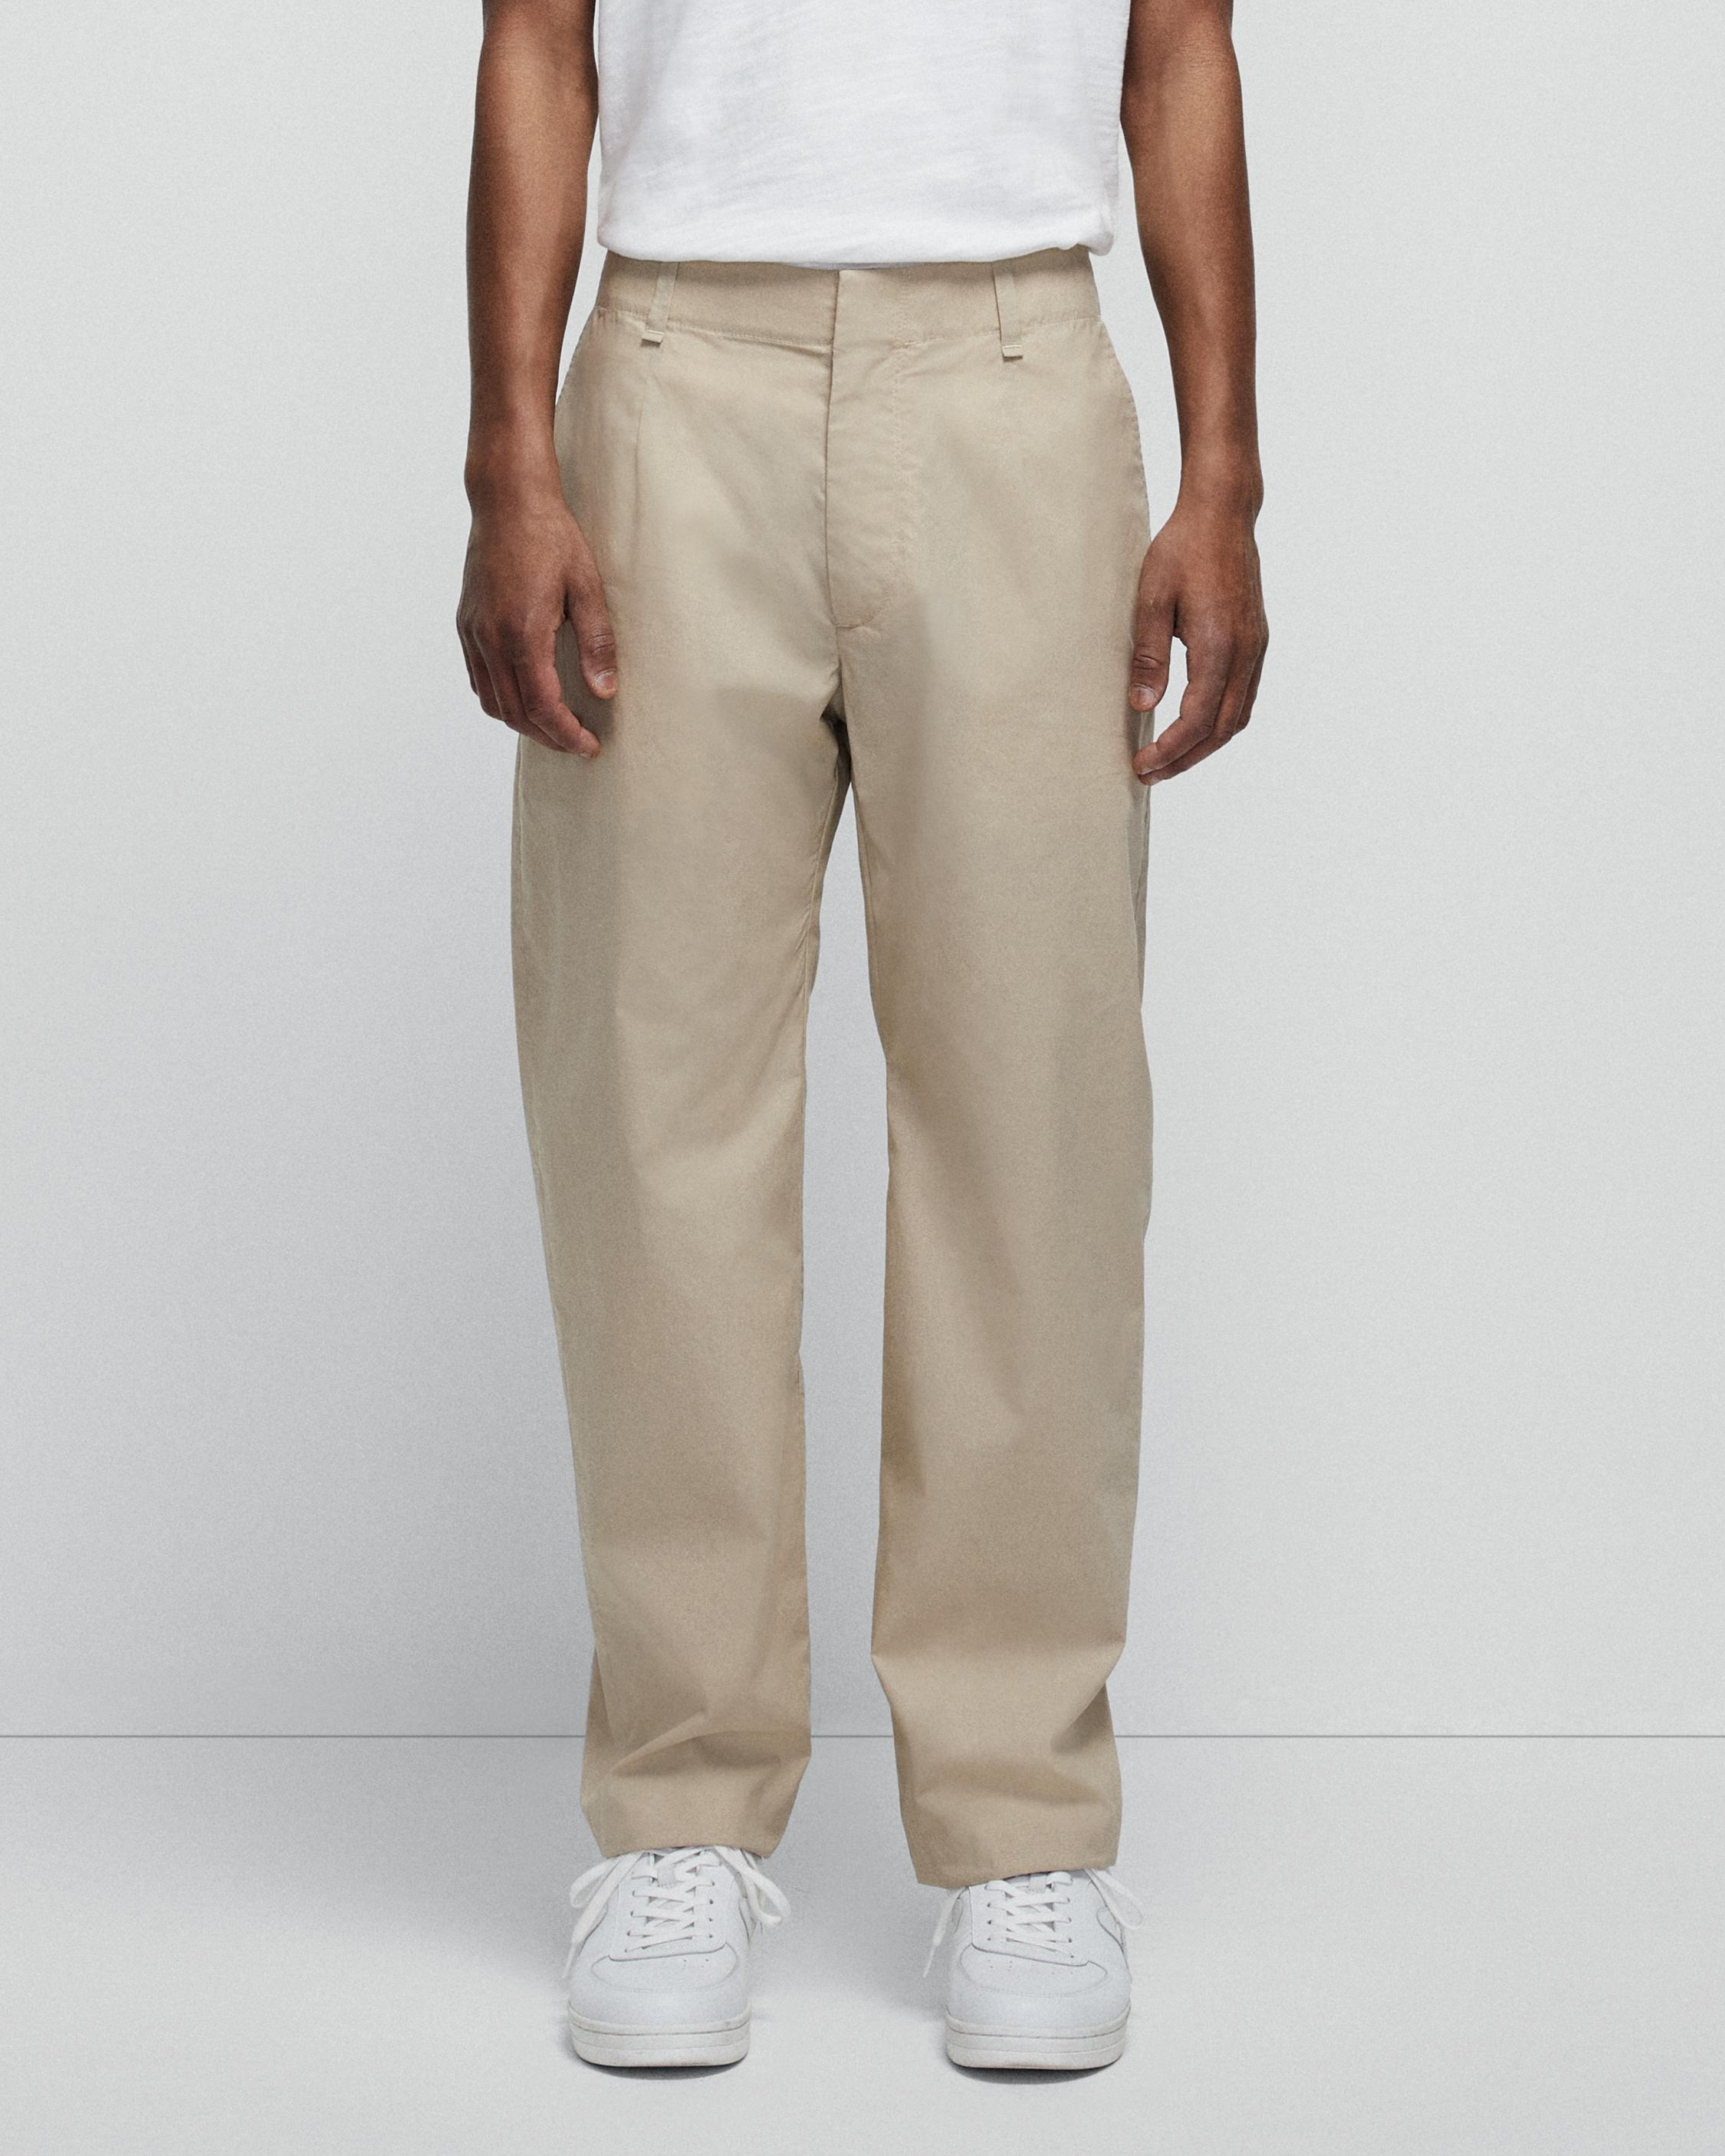 Shift Paper Cotton Trouser
Slim Fit Pant - 4